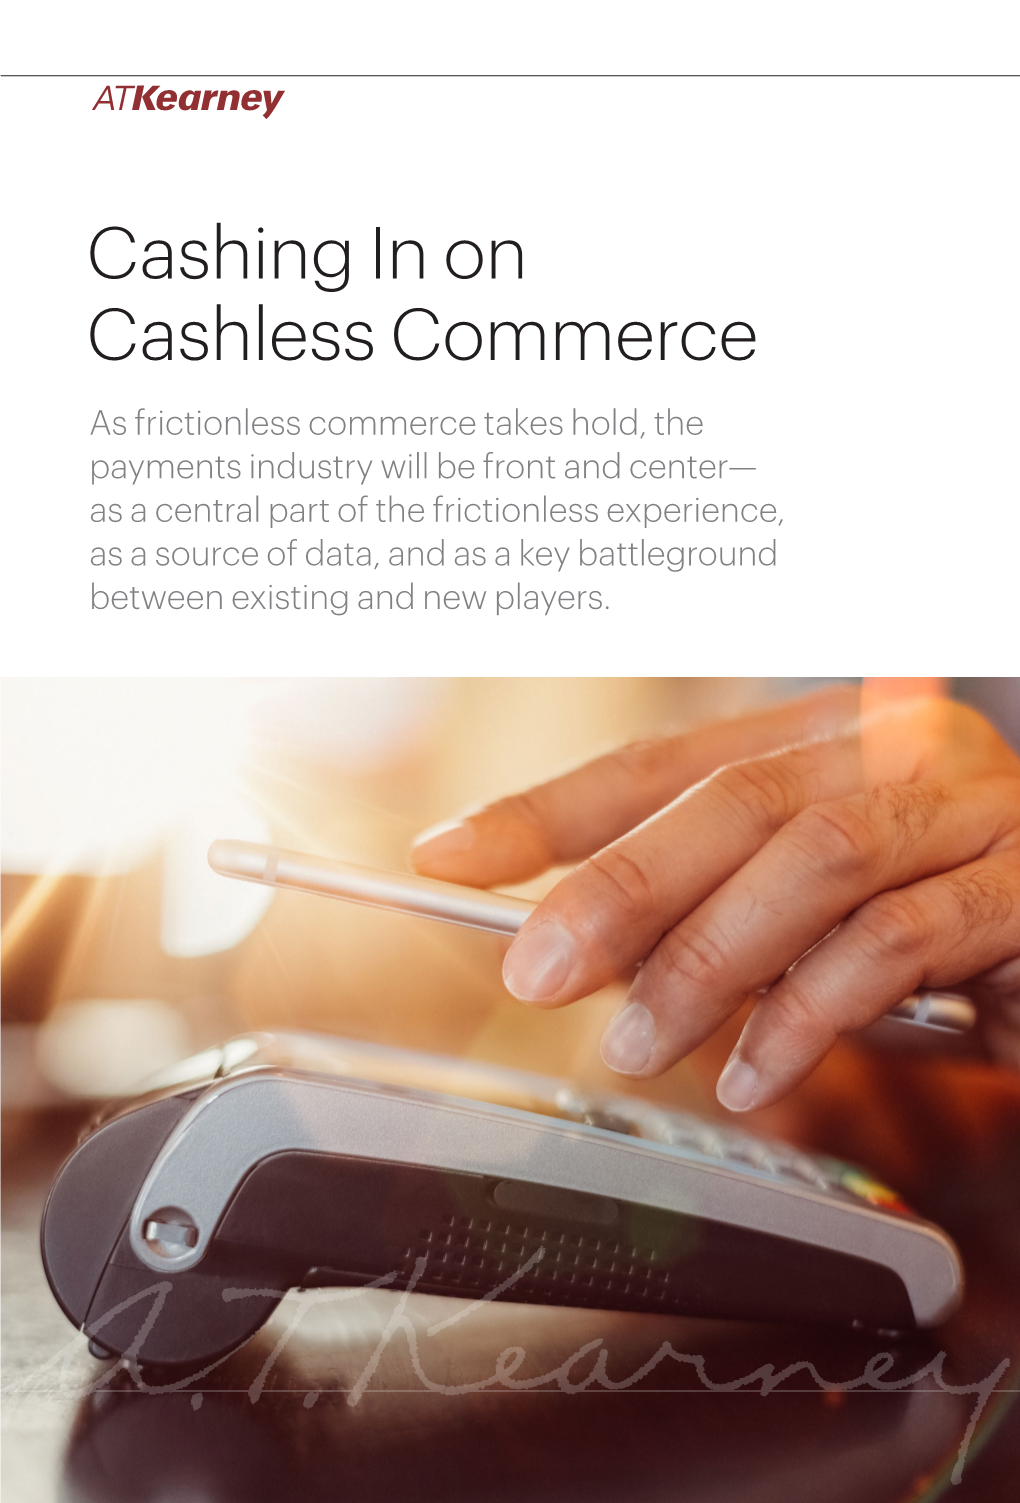 Cashing in on Cashless Commerce